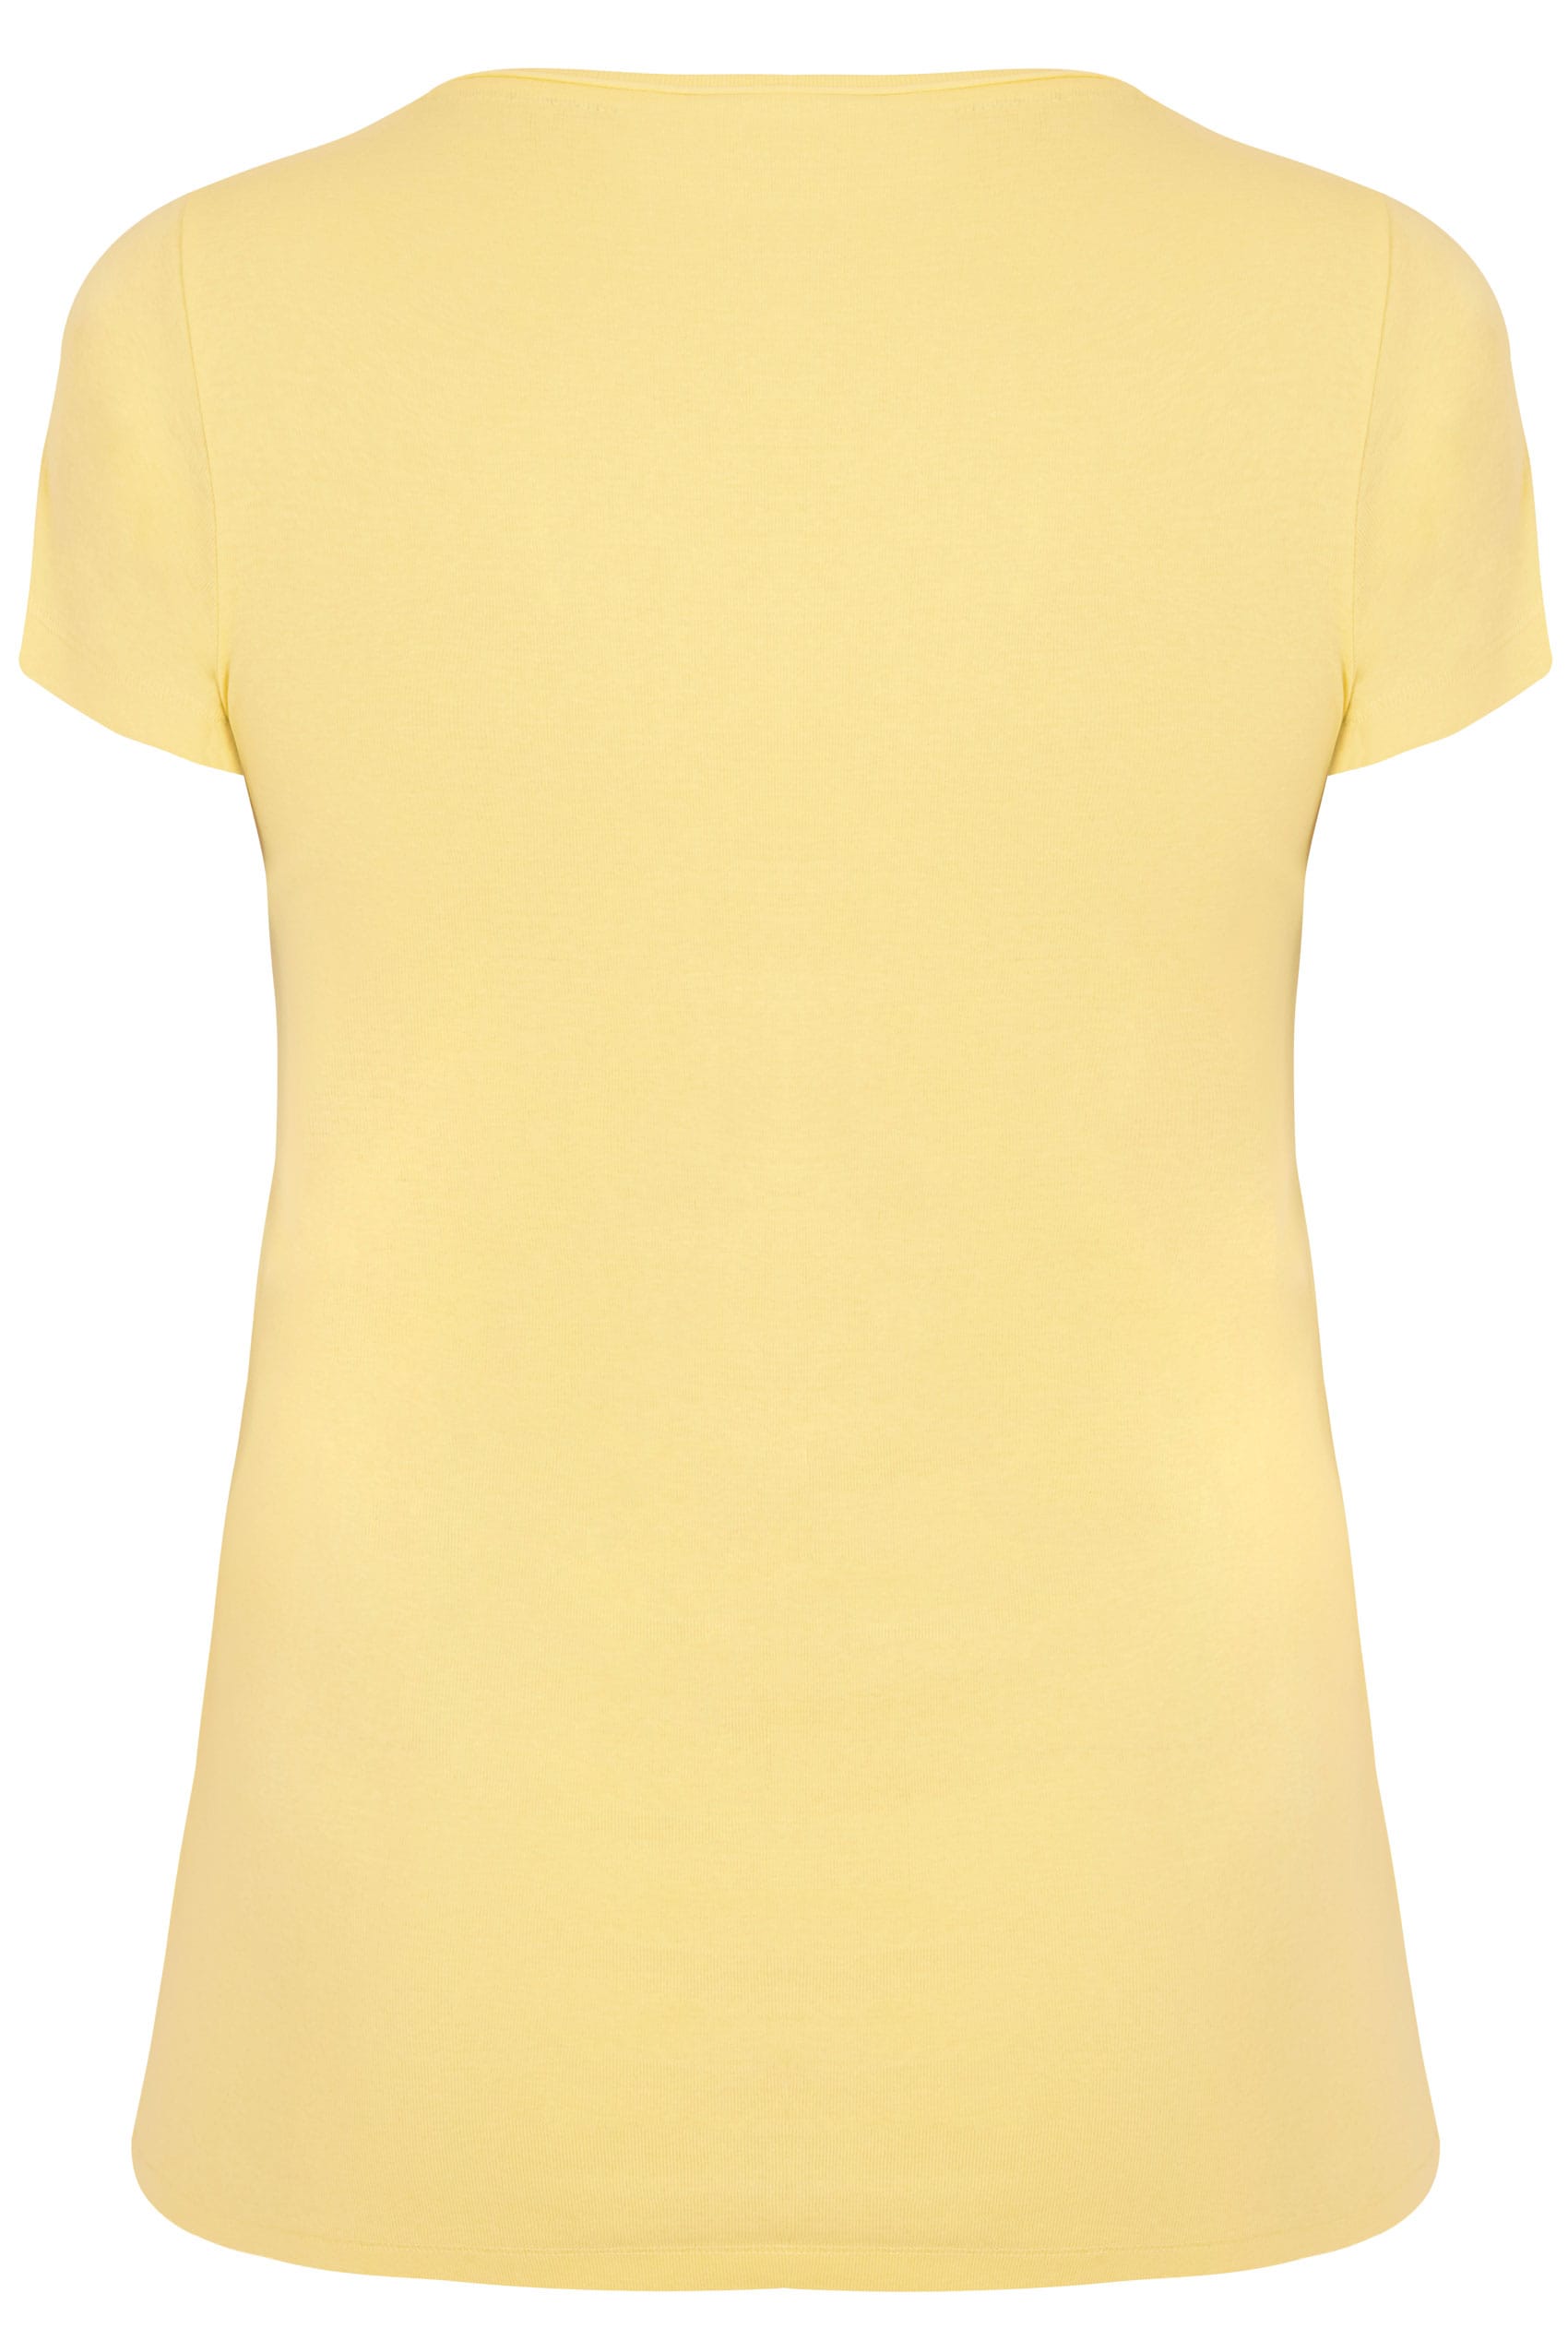 Lemon Yellow Short Sleeved V Neck Basic T Shirt Plus Size 16 To 36